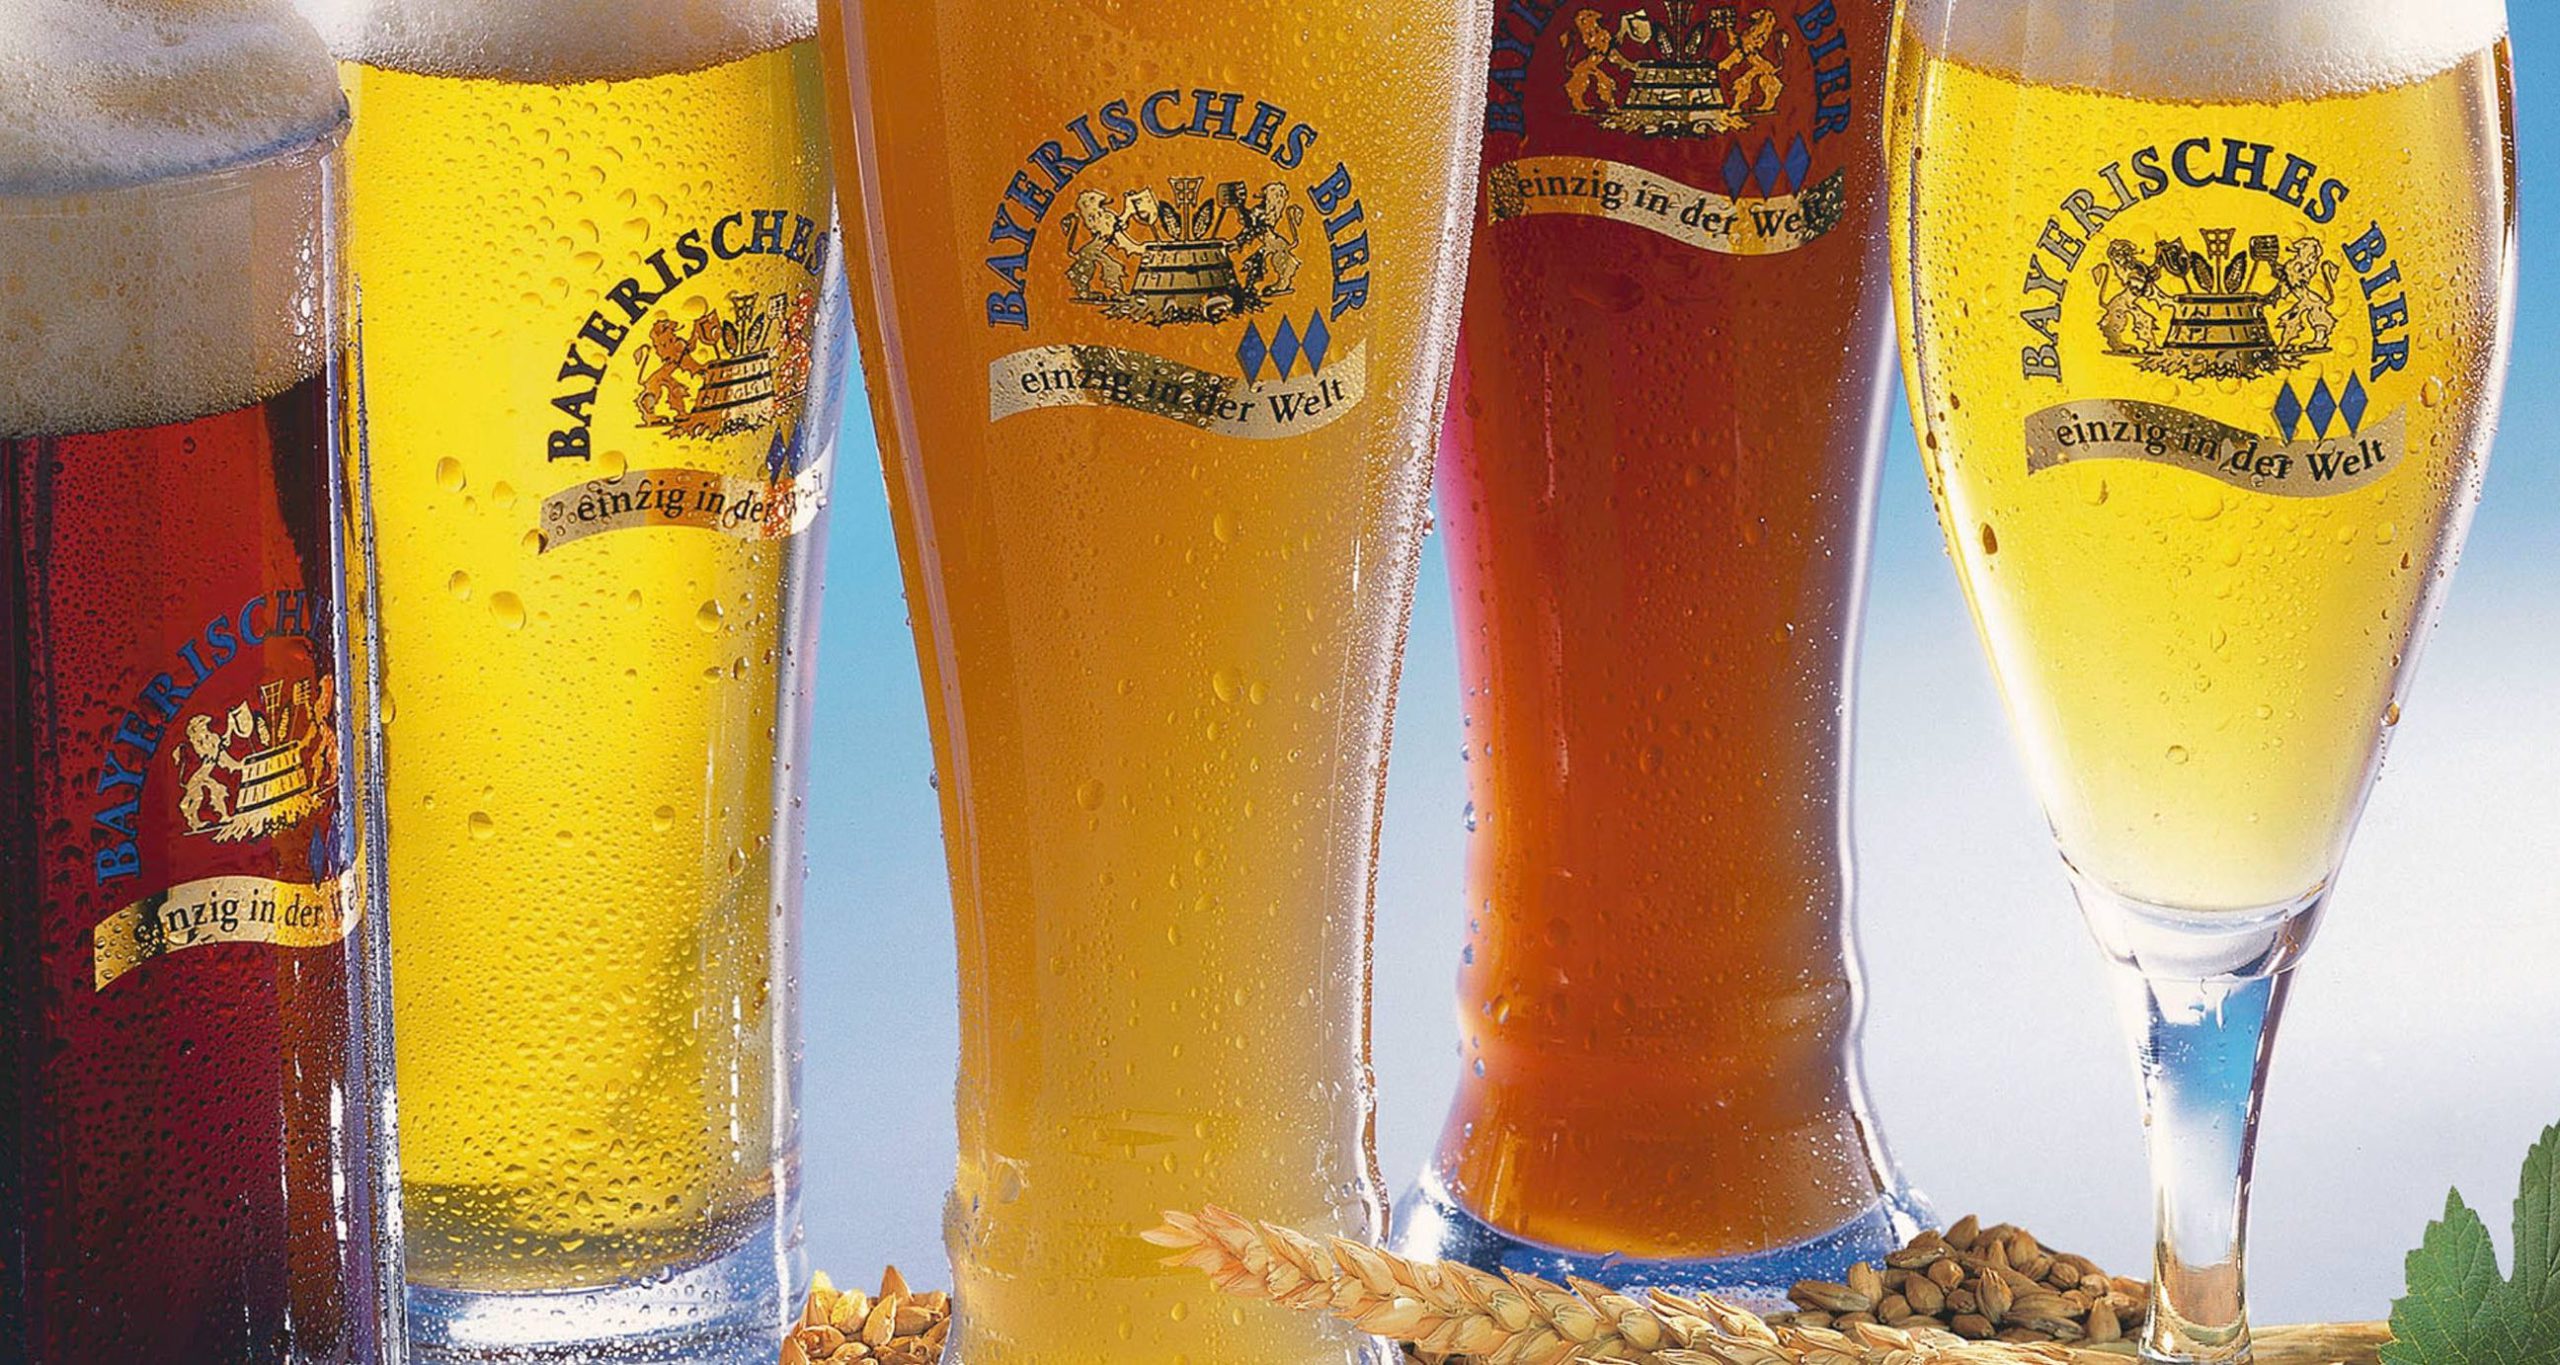 Топ-5 самых необычных сортов пива из Баварии